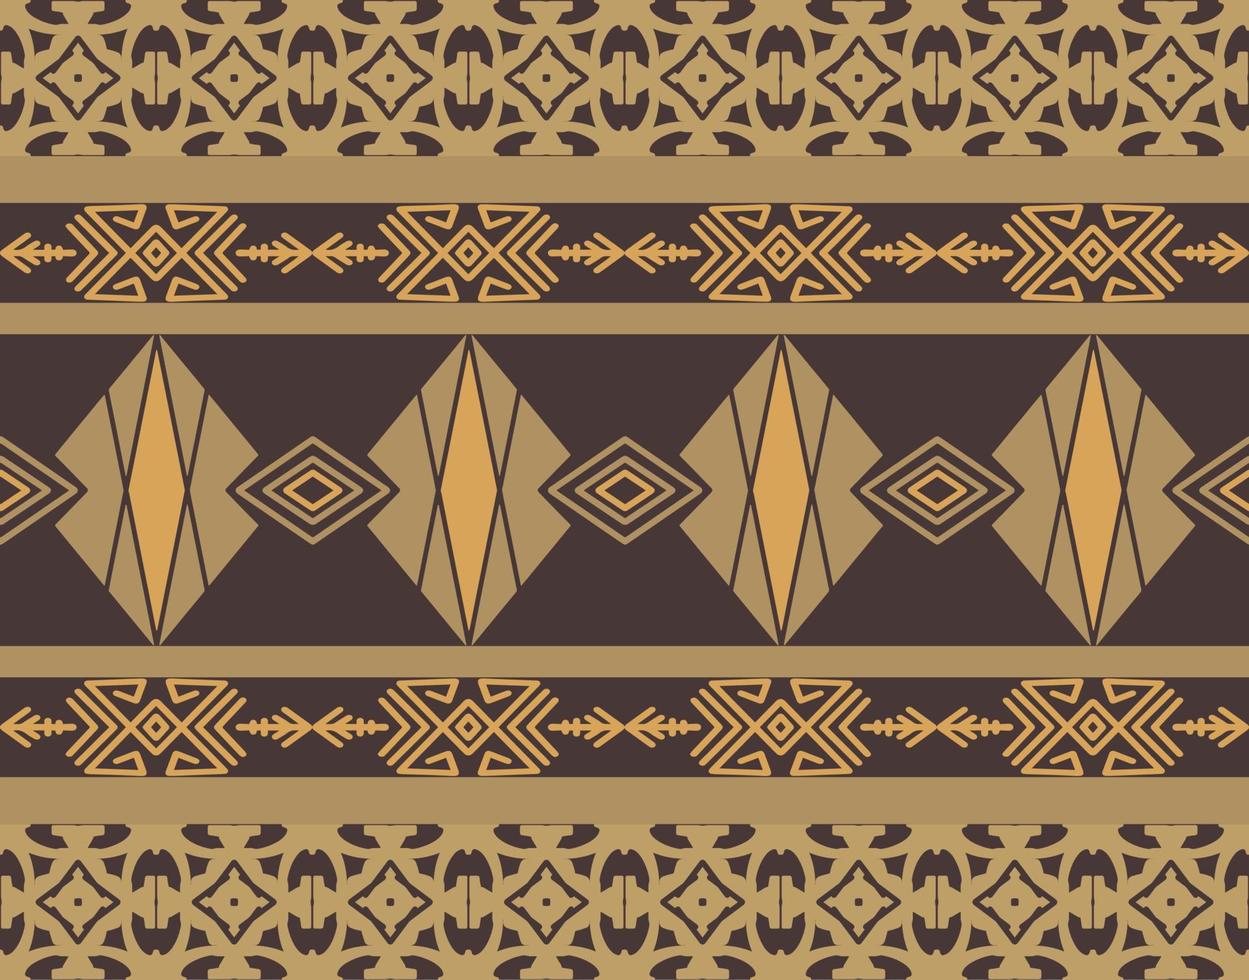 geometrisches Muster mit Stammesform. entworfen in Ikat, Boho, Aztec, Folk, Motiv, Zigeuner, arabischem Stil. ideal für Stoffbekleidung, Keramik, Tapeten, Schreibwaren, Markenidentität und Verpackungsdesign. vektor